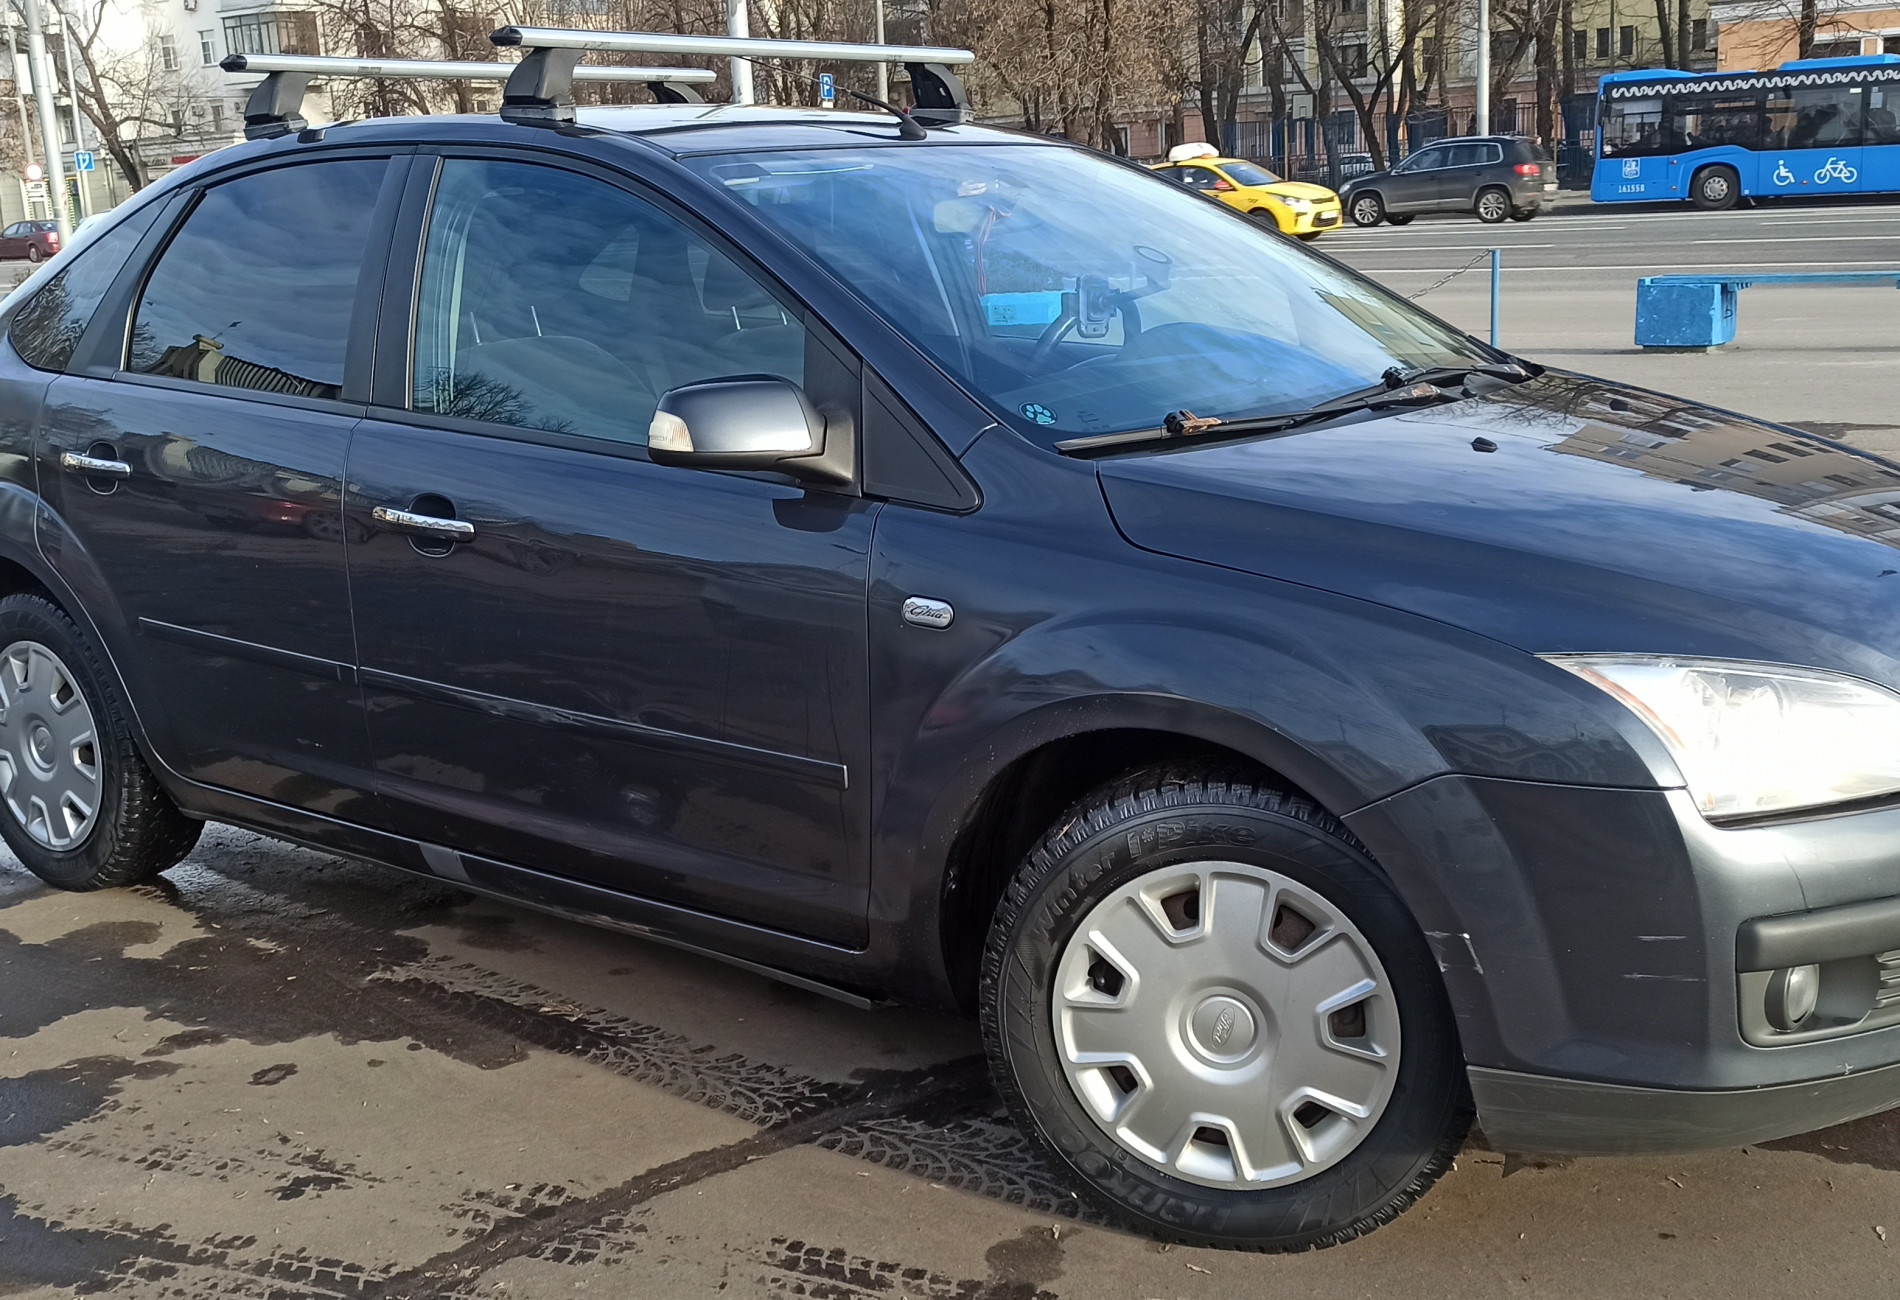 Аренда ford focus эконом класса 2007 года в городе Москва Люблино от 1800 руб./сутки, передний привод, двигатель: бензин, объем 1.6 литров, ОСАГО (Мультидрайв), без водителя, недорого - RentRide